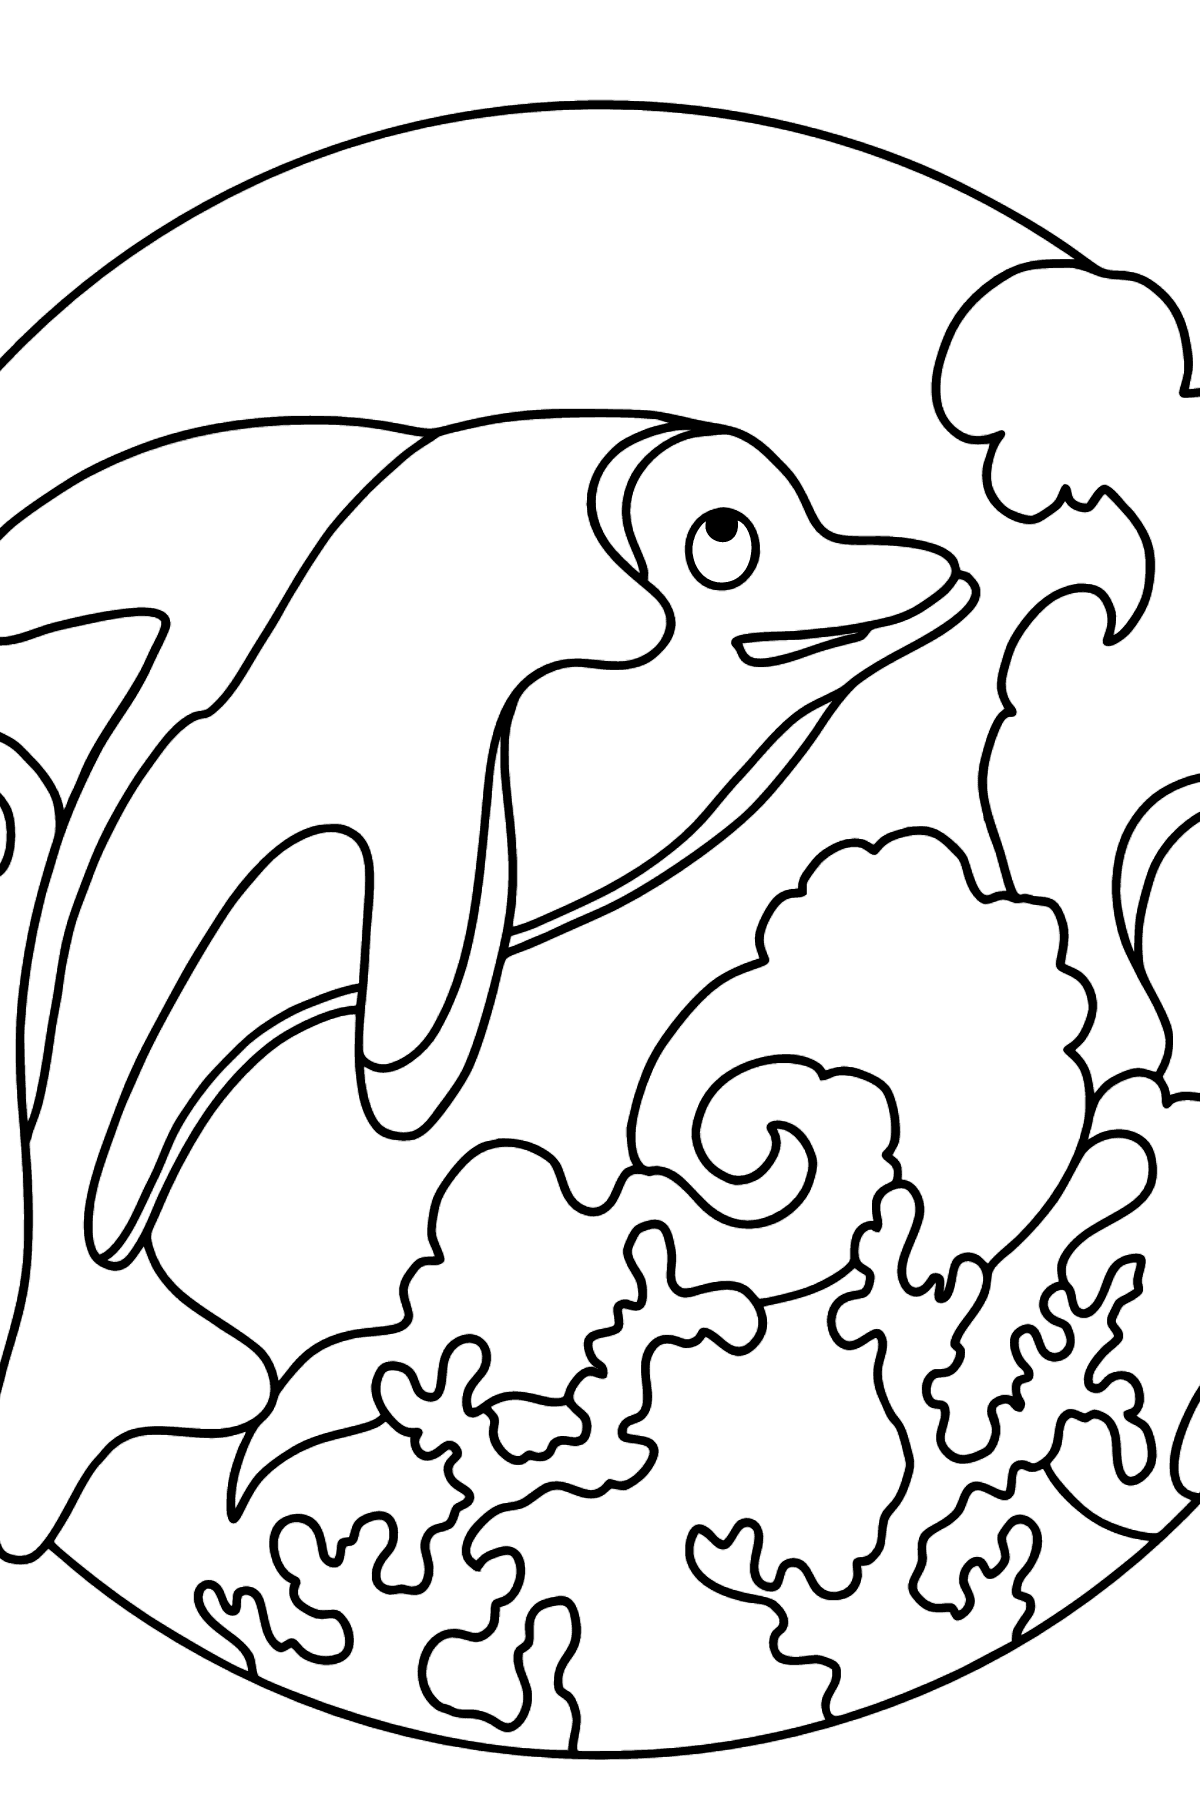 Раскраска дельфин для печати (легко) - Картинки для Детей